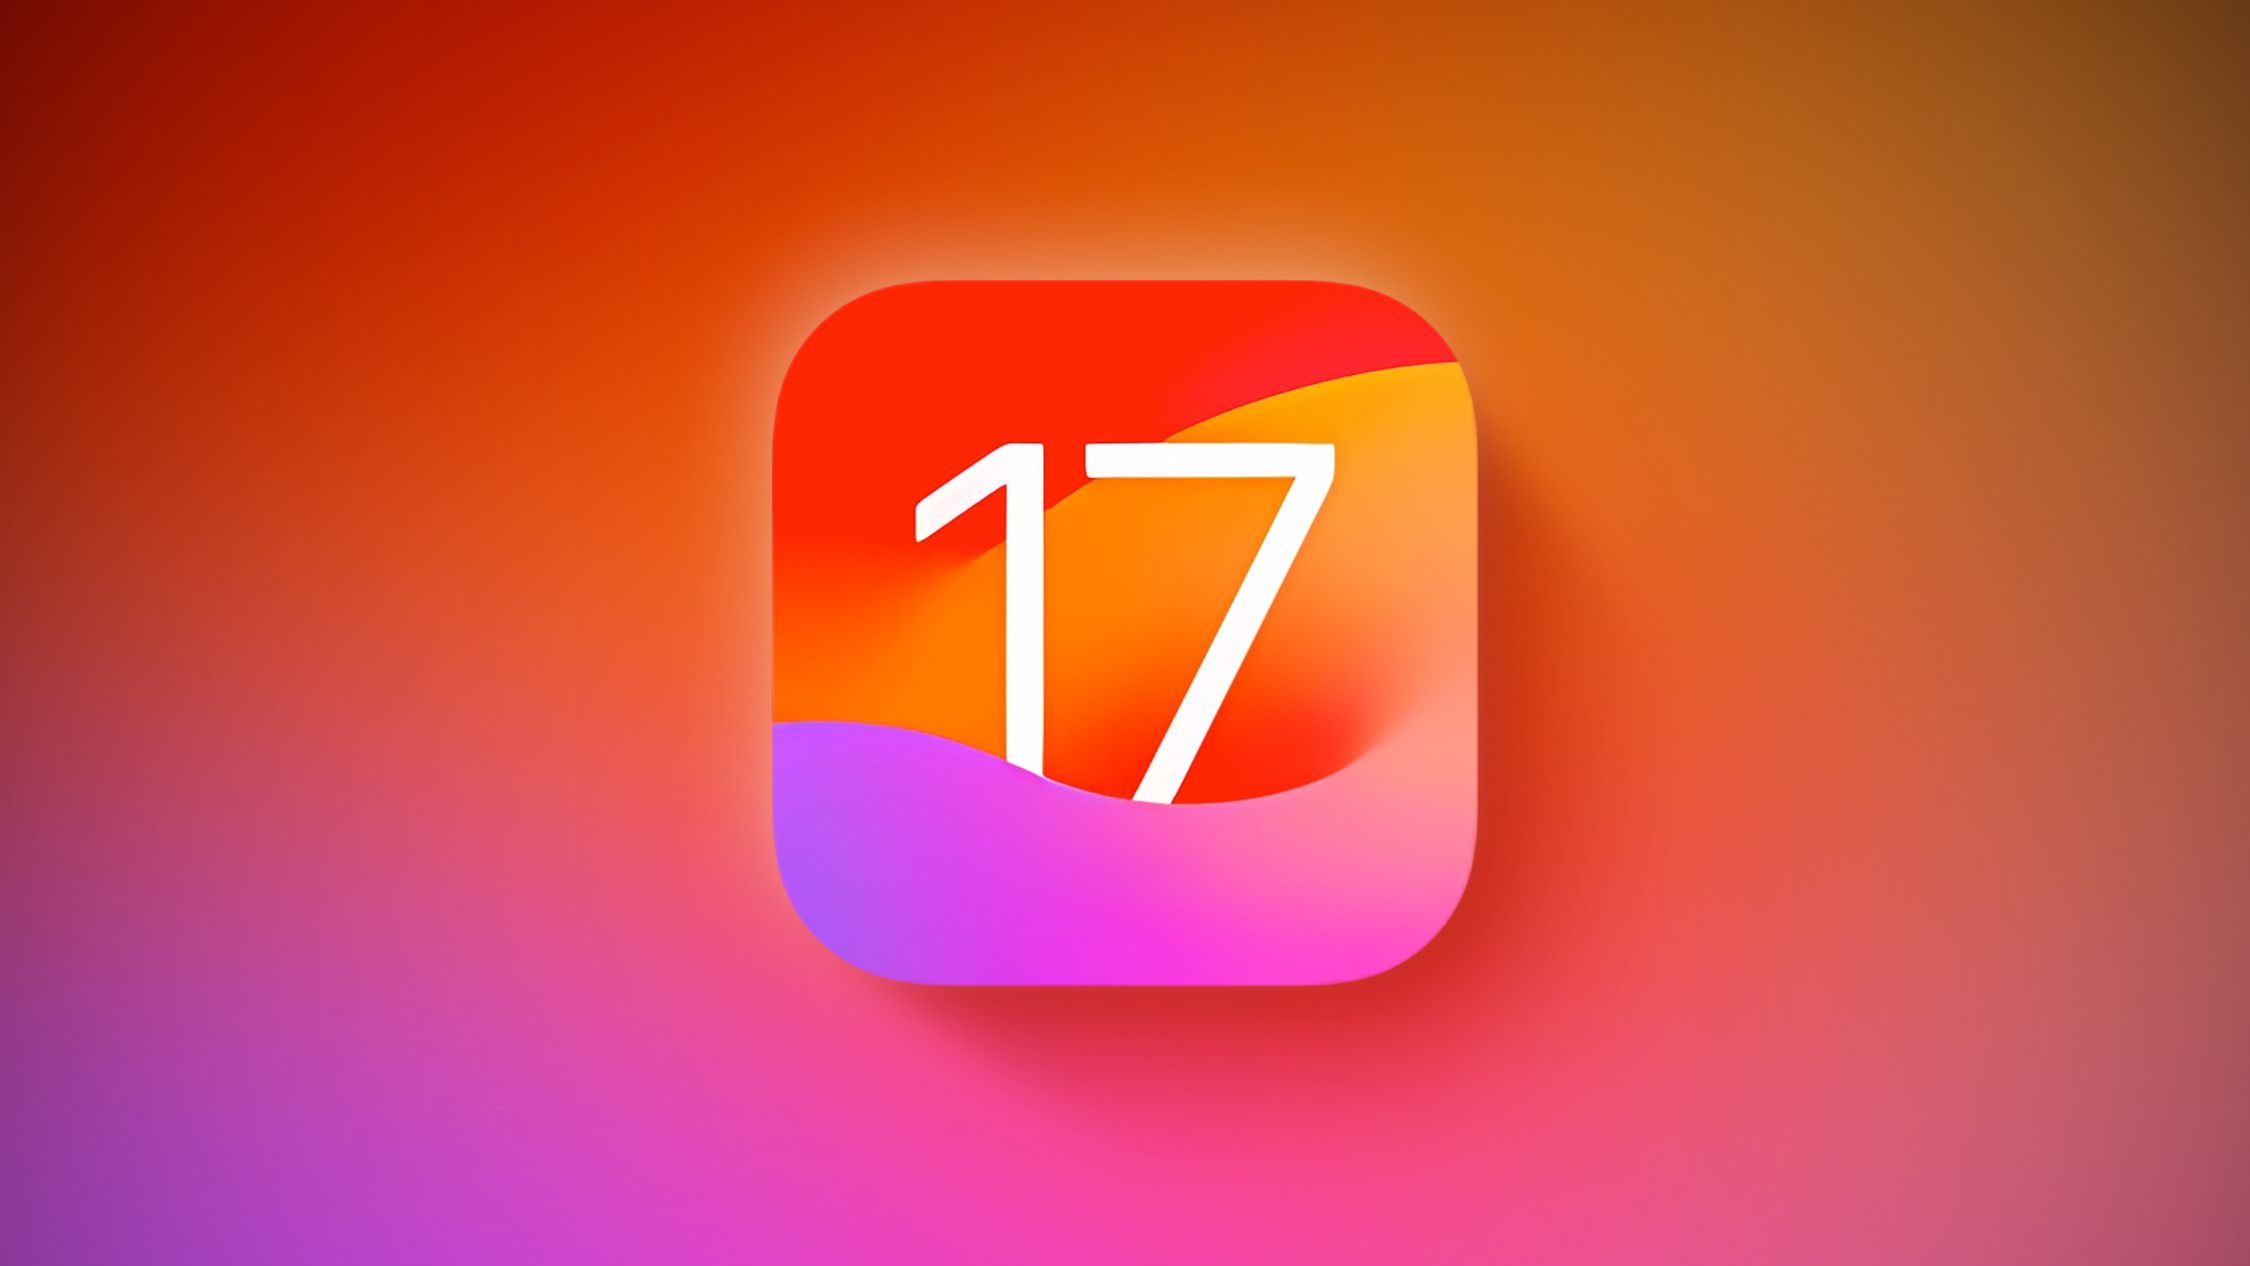 Apple's new iOS 17.